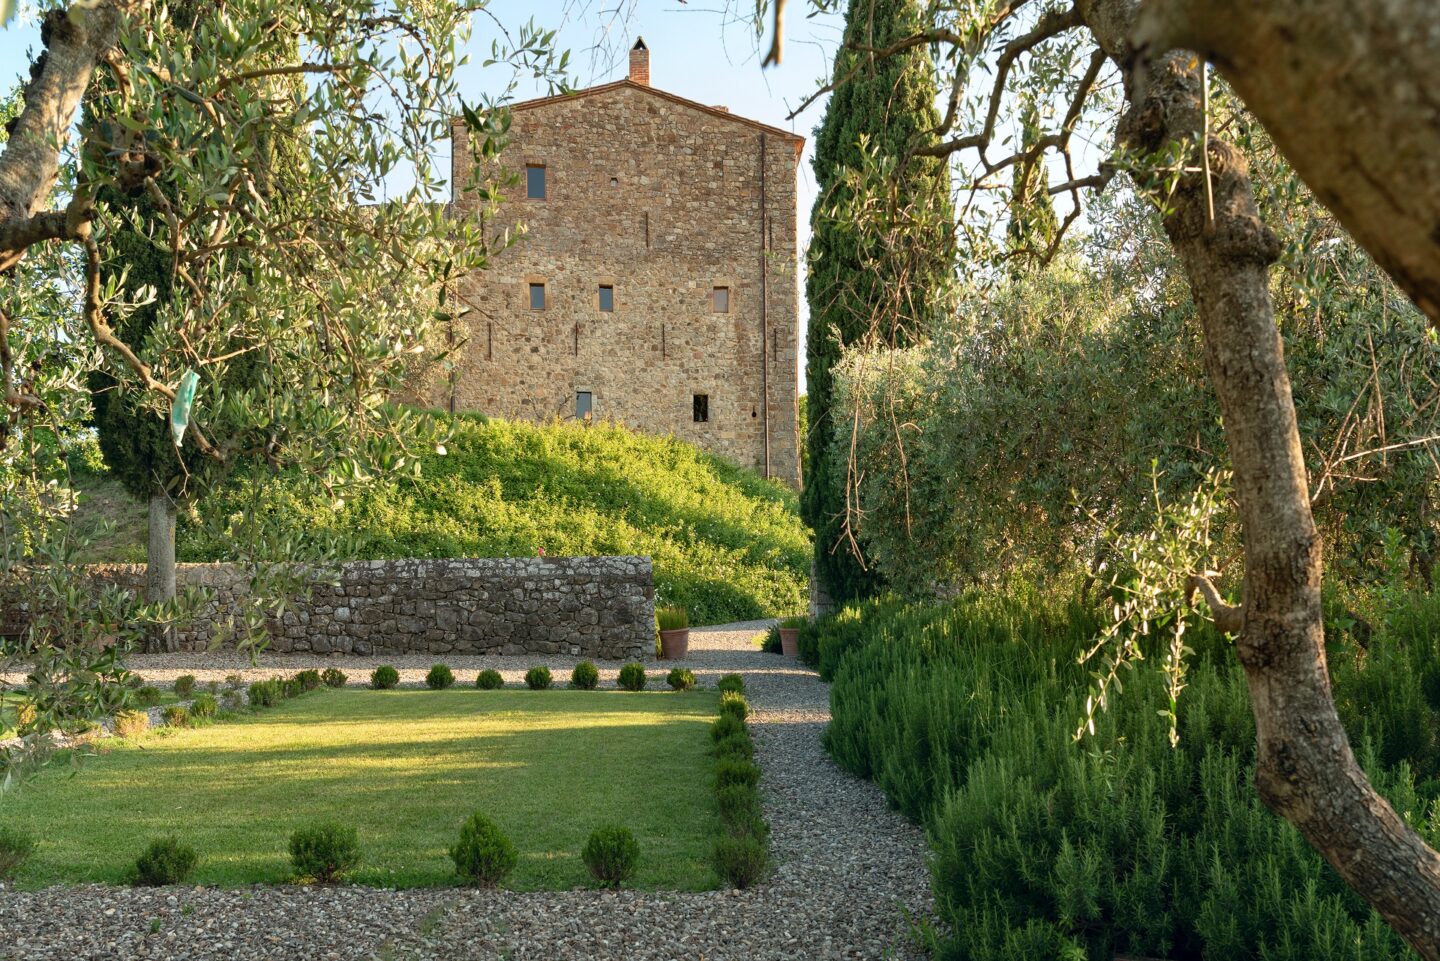 Castello Di Vicarello © https://www.castellodivicarello.com/gallery/#lg=1&slide=29